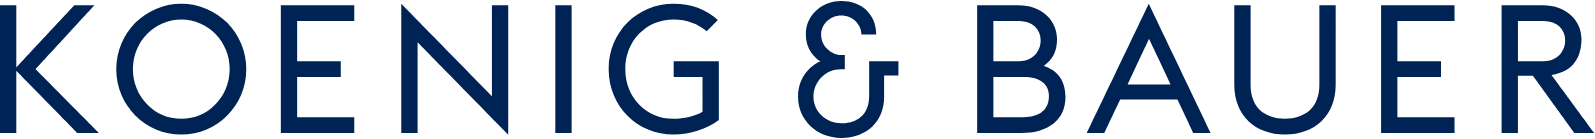 Koenig & Bauer logo large (transparent PNG)